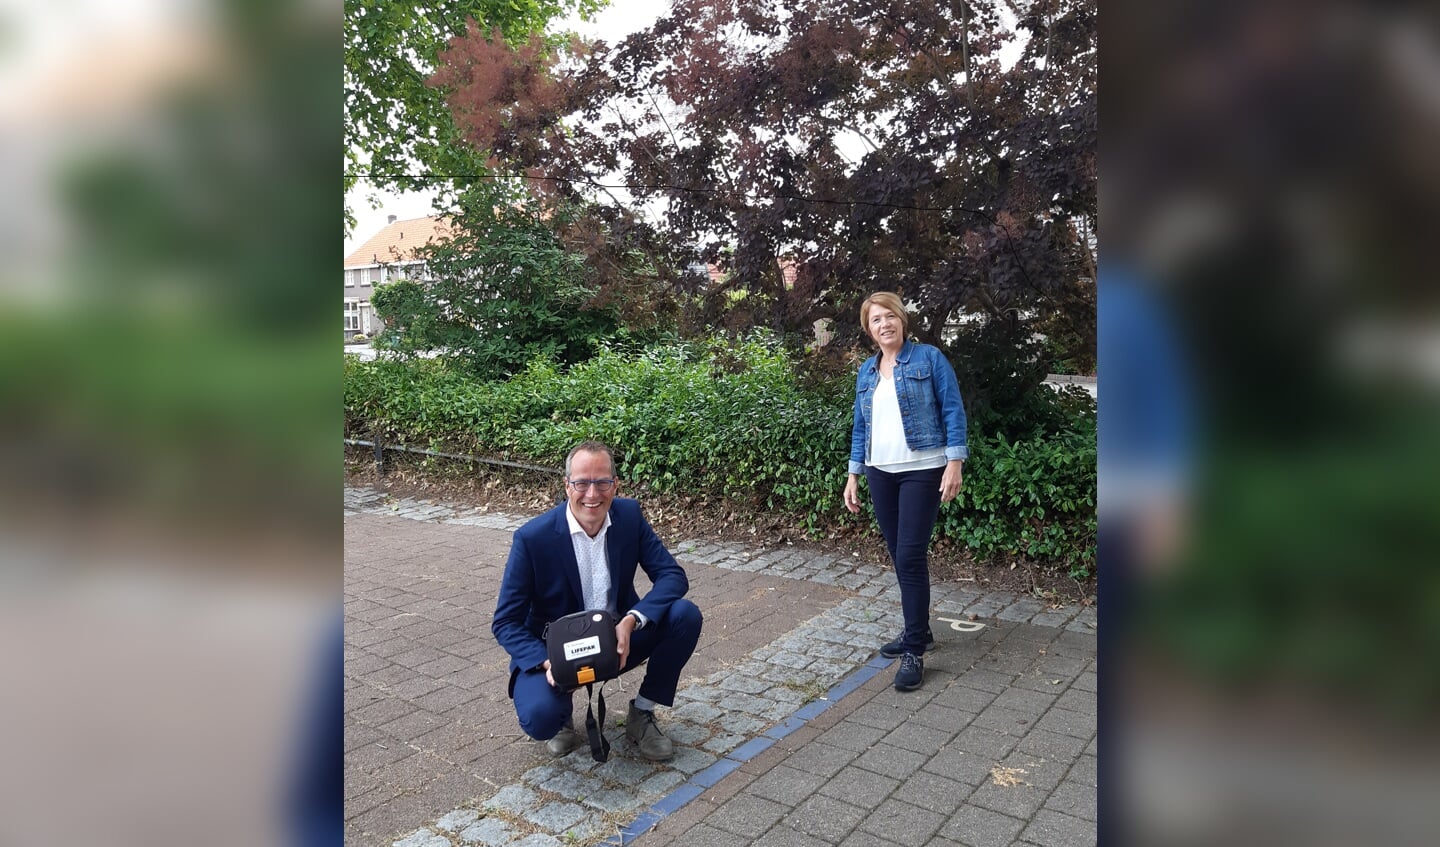 Wethouder Harke Dijksterhuis met een AED in zijn handen, naast hem staat Rietha Dasselaar, voorzitter van de Stichting AED Nijkerk-Hoevelaken.